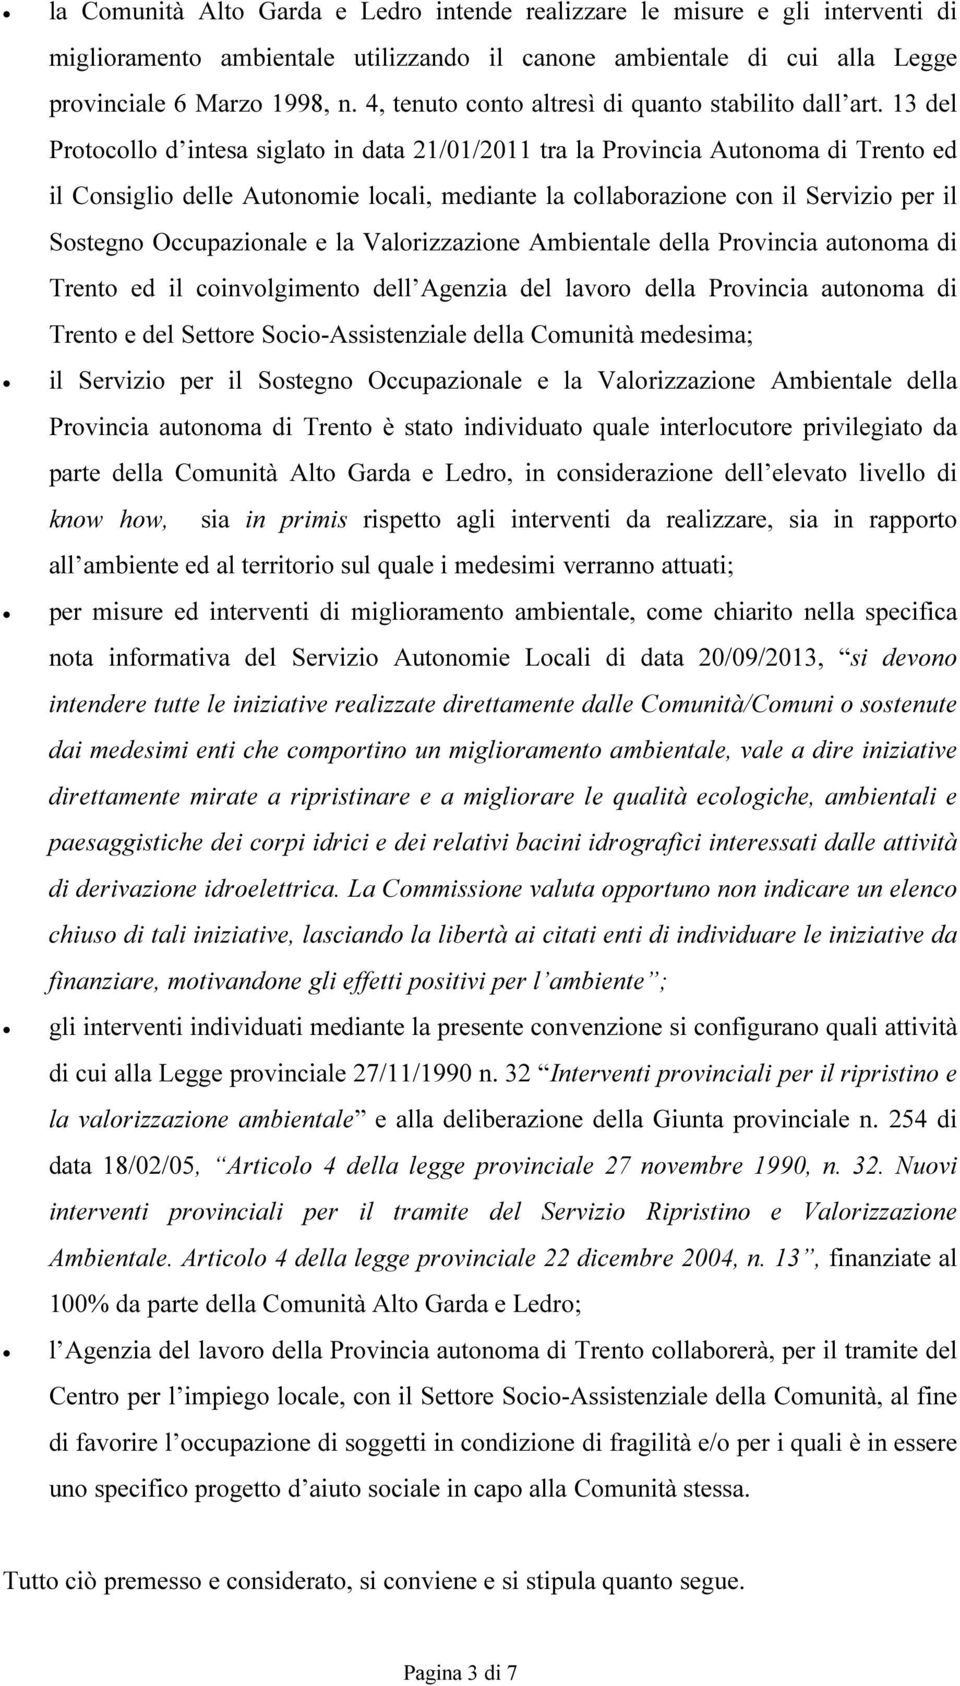 13 del Protocollo d intesa siglato in data 21/01/2011 tra la Provincia Autonoma di Trento ed il Consiglio delle Autonomie locali, mediante la collaborazione con il Servizio per il Sostegno